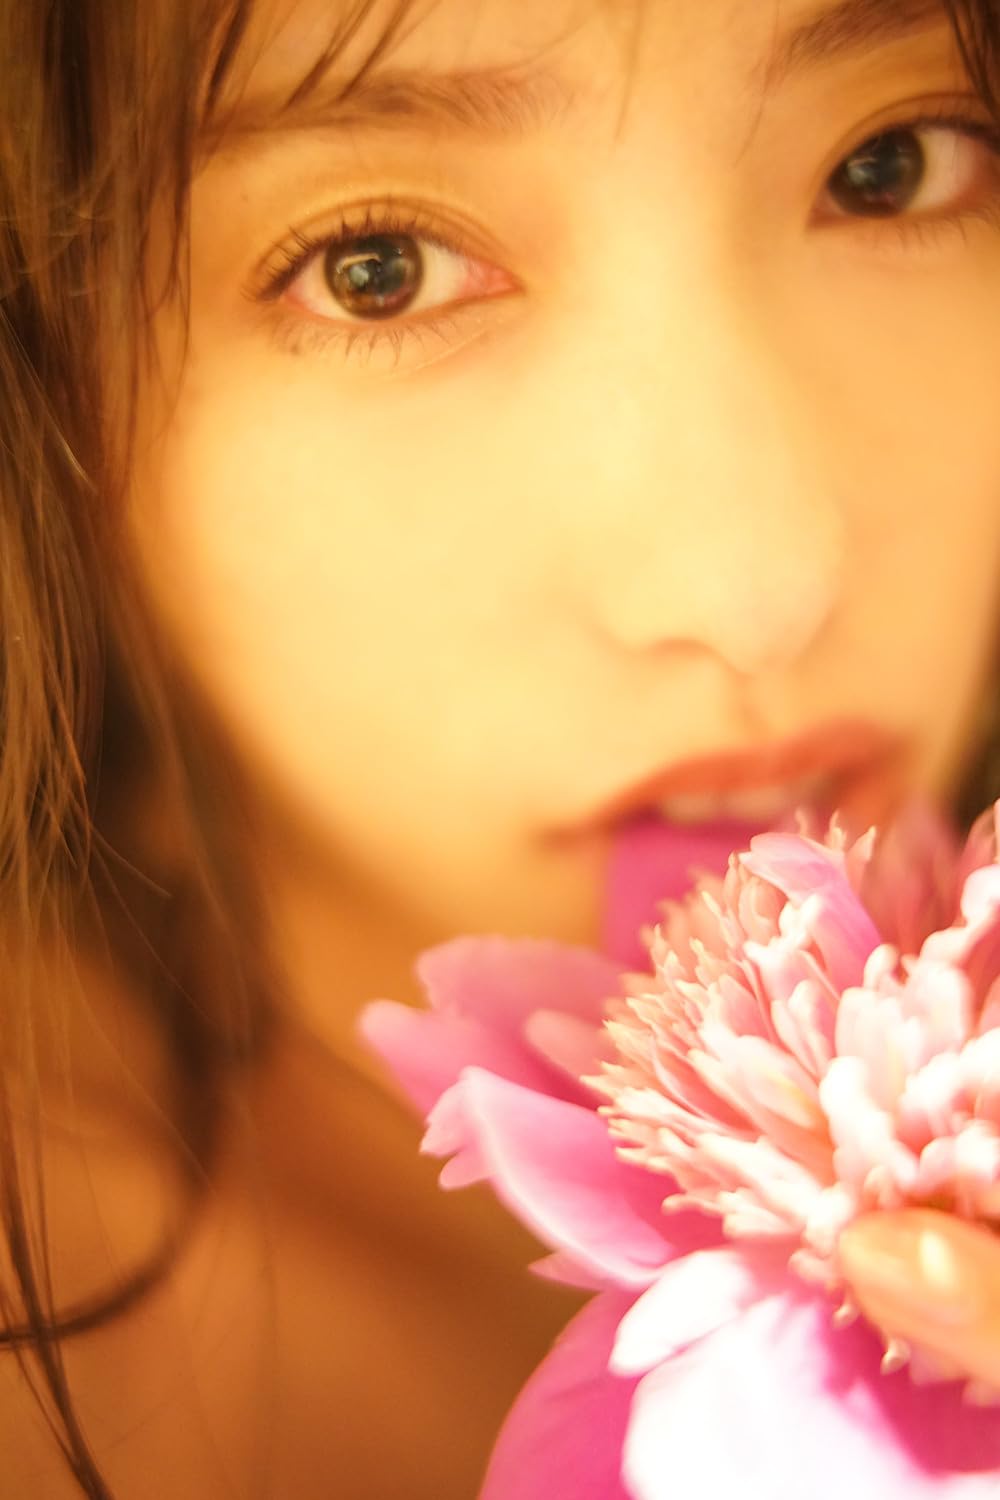 타카나시 미즈키 사진집 - 처녀에게 꽃다발을